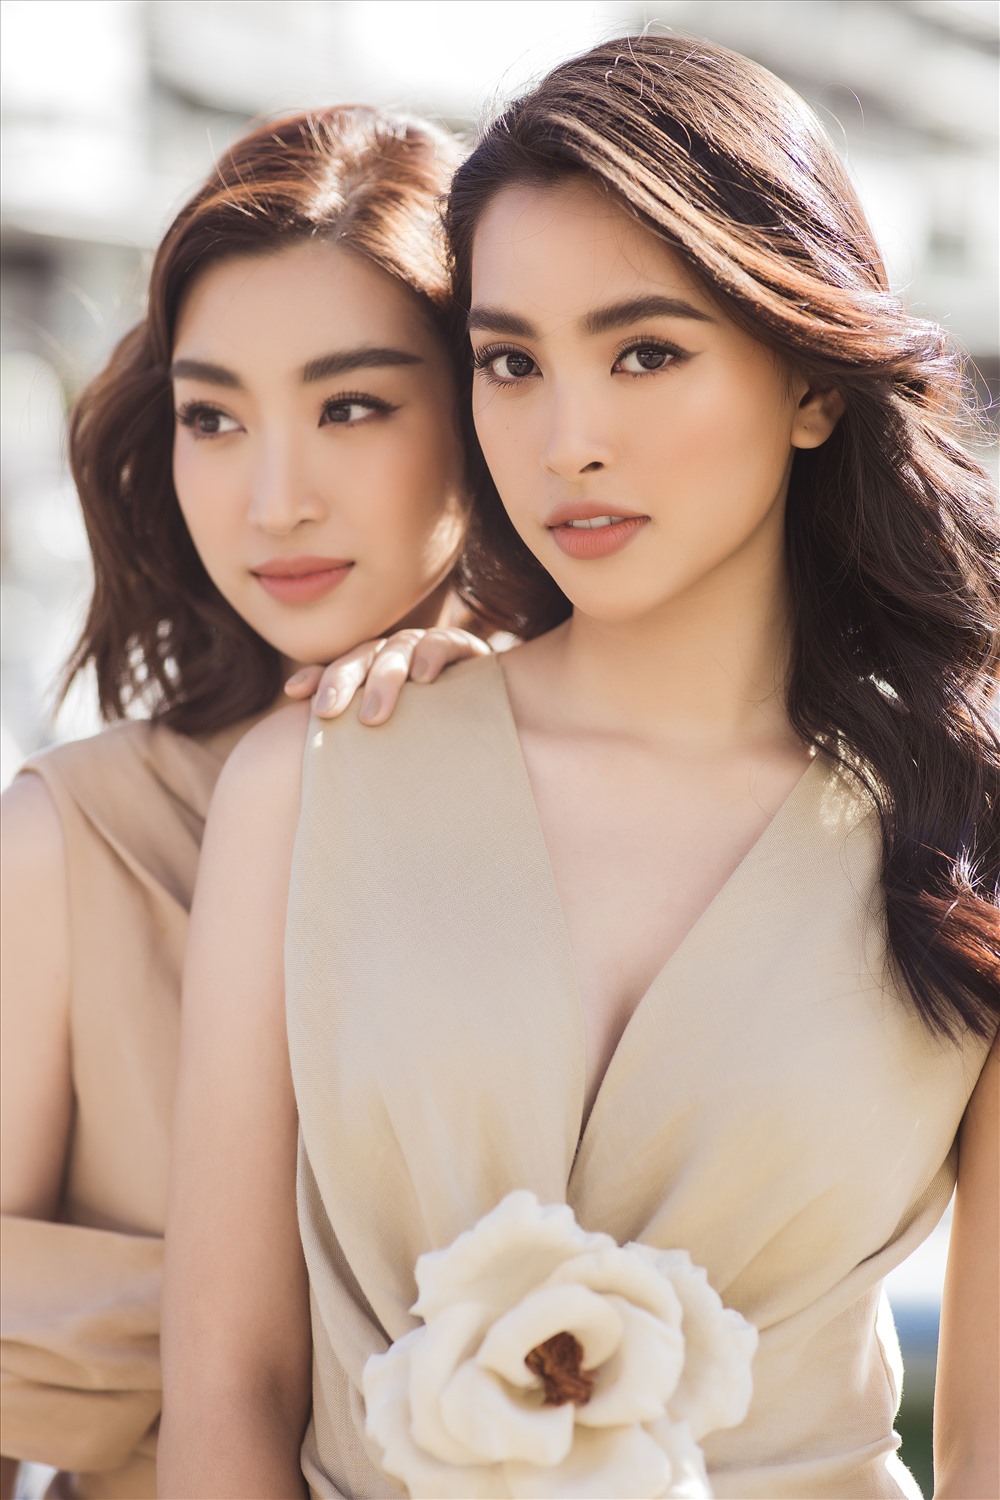 Năm nay, Tiểu Vy và Mỹ Linh là đại sứ của cuộc thi Miss World Vietnam 2019 - cuộc thi nhằm tìm kiếm đại diện sắc đẹp và tài năng tham gia cuộc thi Miss World 2019 sẽ được diễn ra vào tháng 11 tại Thái Lan. Ảnh: Huy Nguyễn.